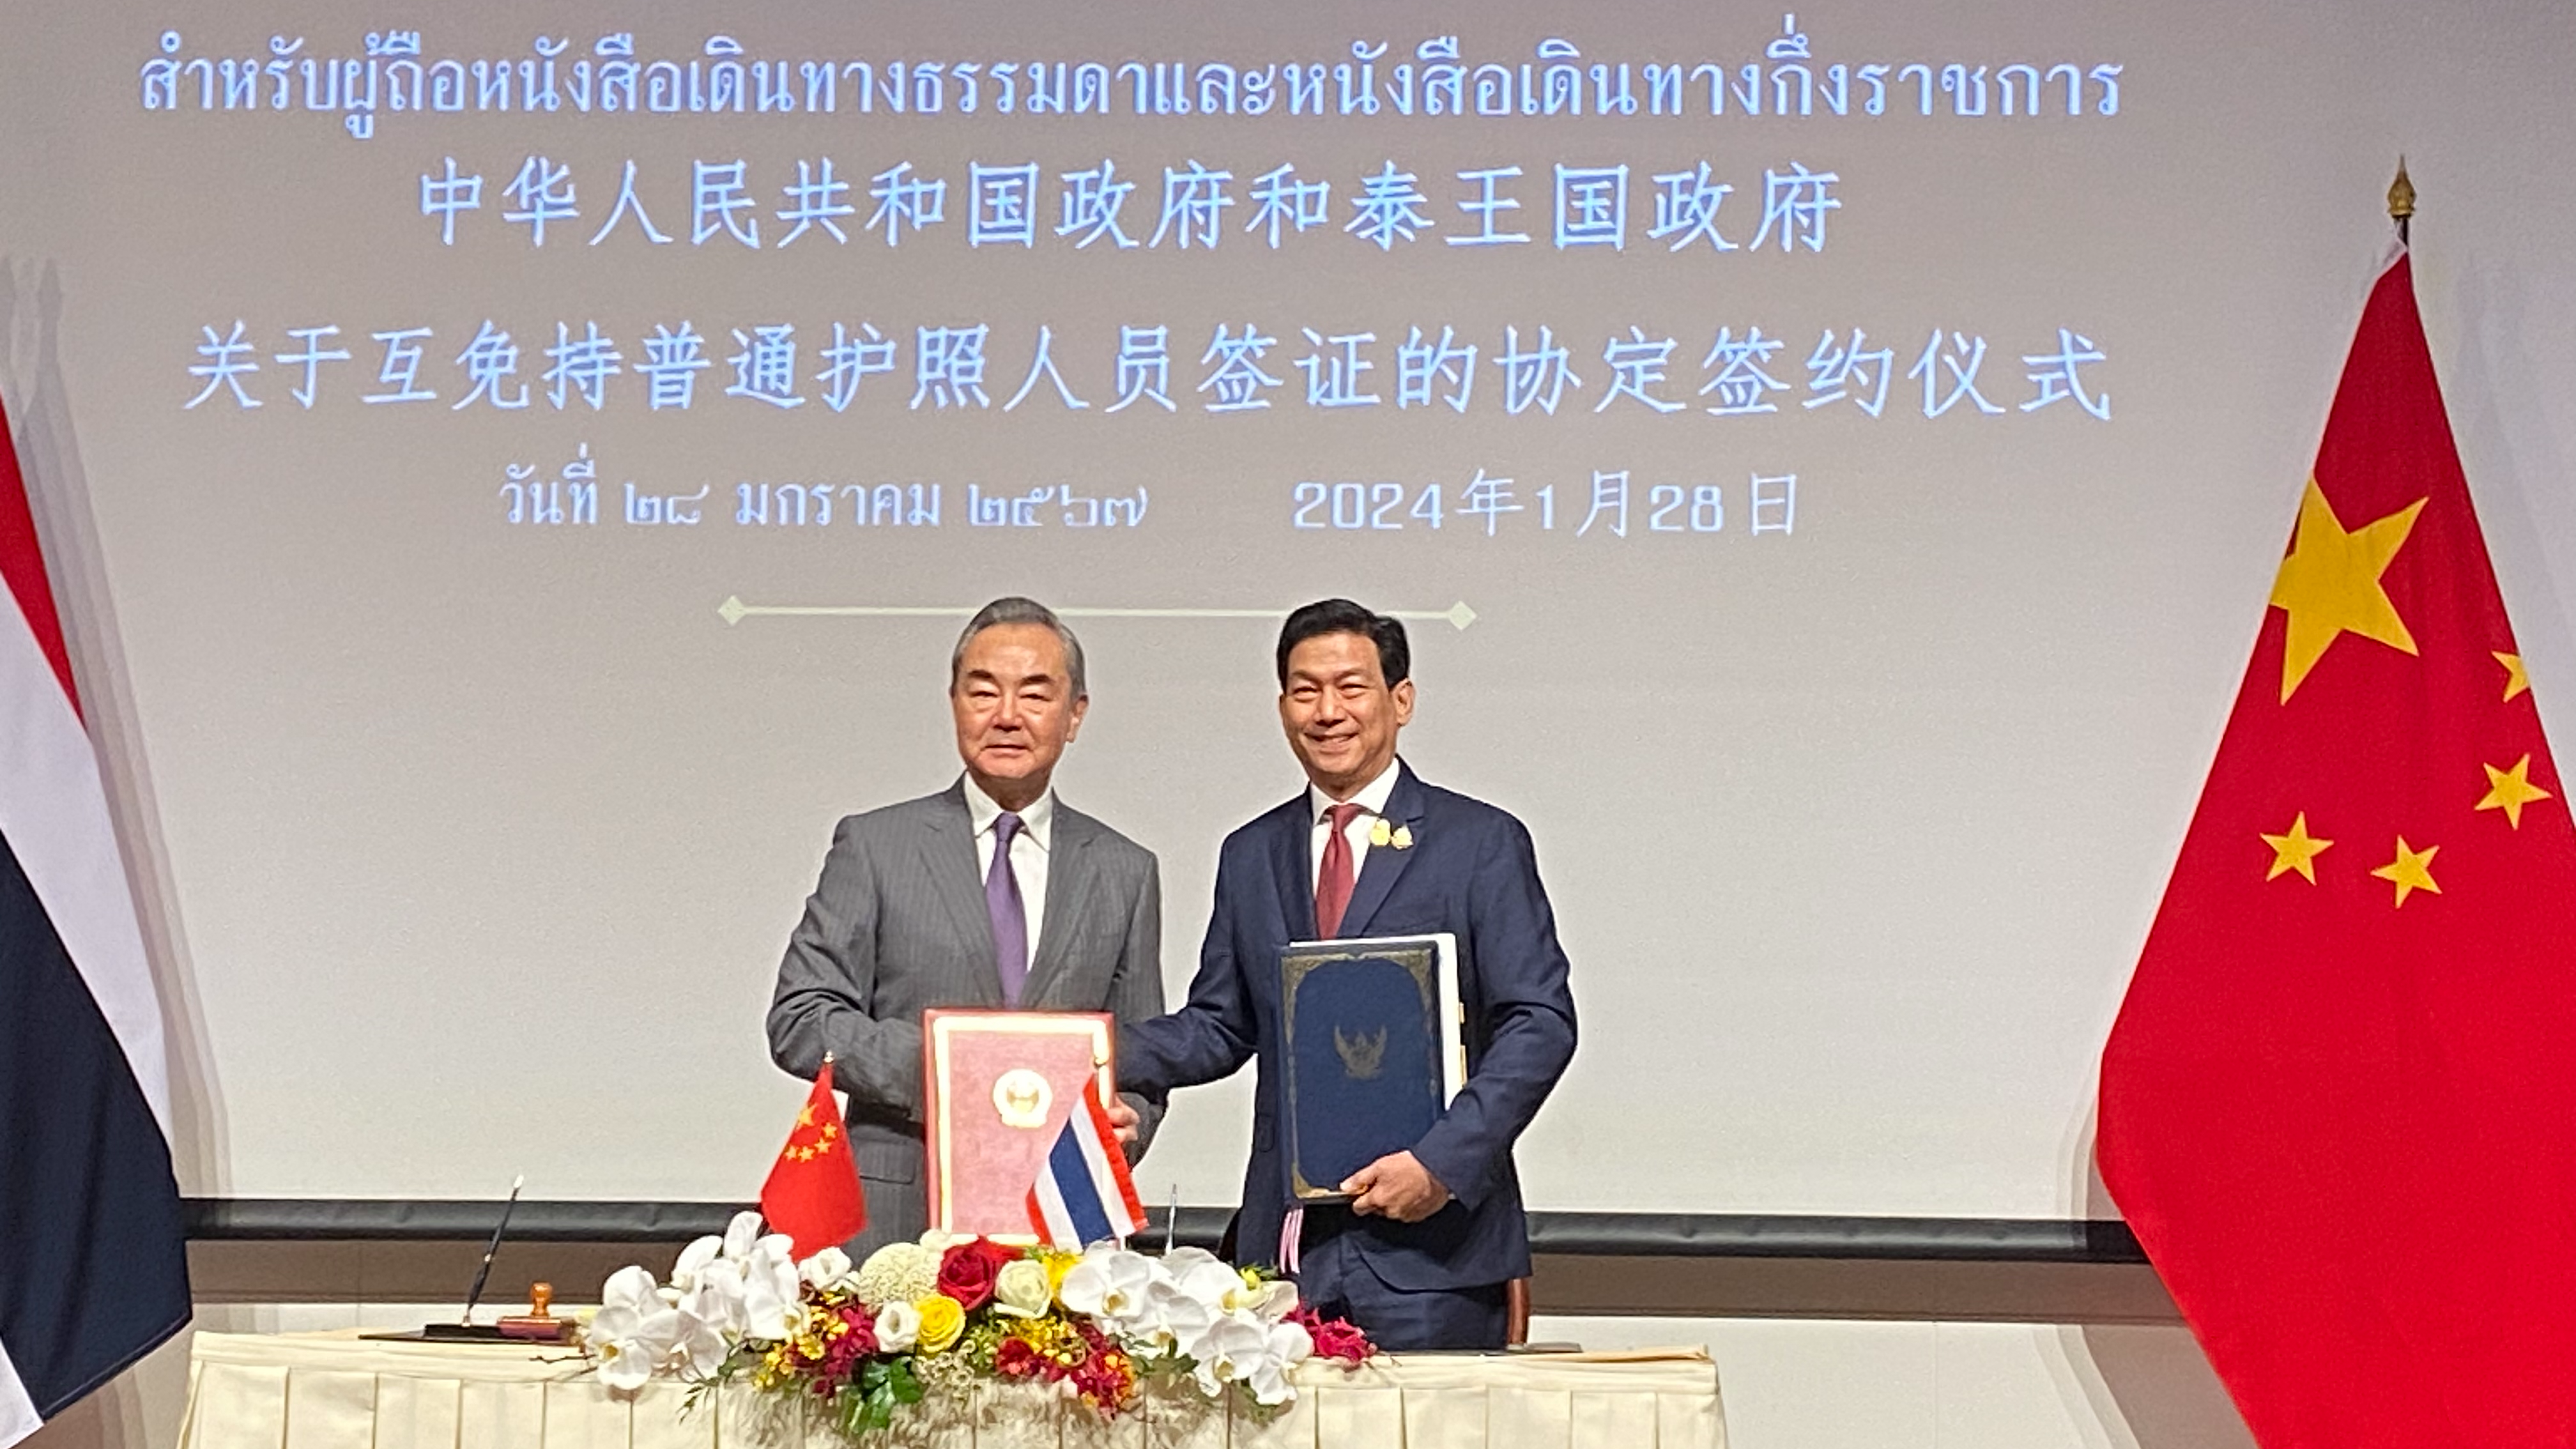 Ο Κινέζος υπουργός Εξωτερικών Γουάνγκ Γι (αριστερά) και ο Ταϊλανδός ομόλογός του Παρνπρί Μπαχίντα-Νουκάρα σε τελετή υπογραφής μιας συμφωνίας αμοιβαίας απαλλαγής από την υποχρέωση θεώρησης μεταξύ Κίνας και Ταϊλάνδης στην Μπανγκόκ, Ταϊλάνδη, 28 Ιανουαρίου 2024. /CGTN